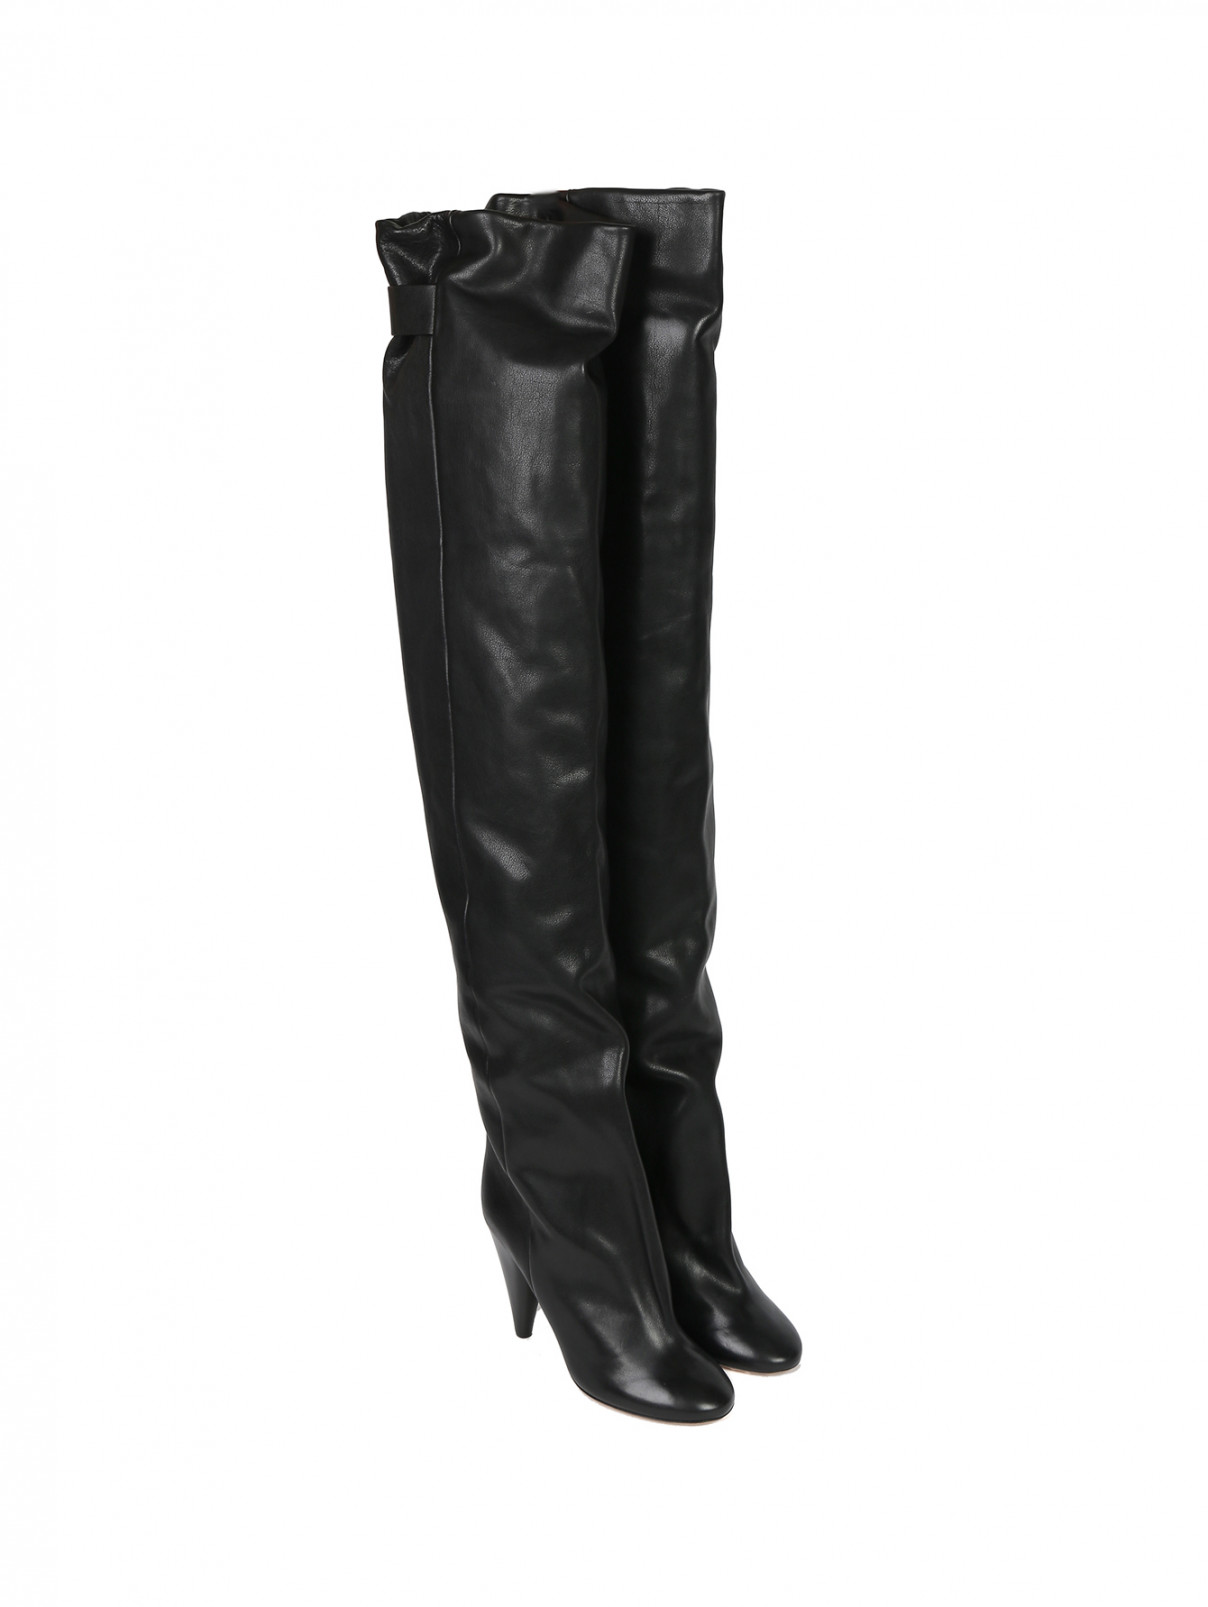 Ботфорты из кожи на высоком каблуке Isabel Marant  –  Общий вид  – Цвет:  Черный